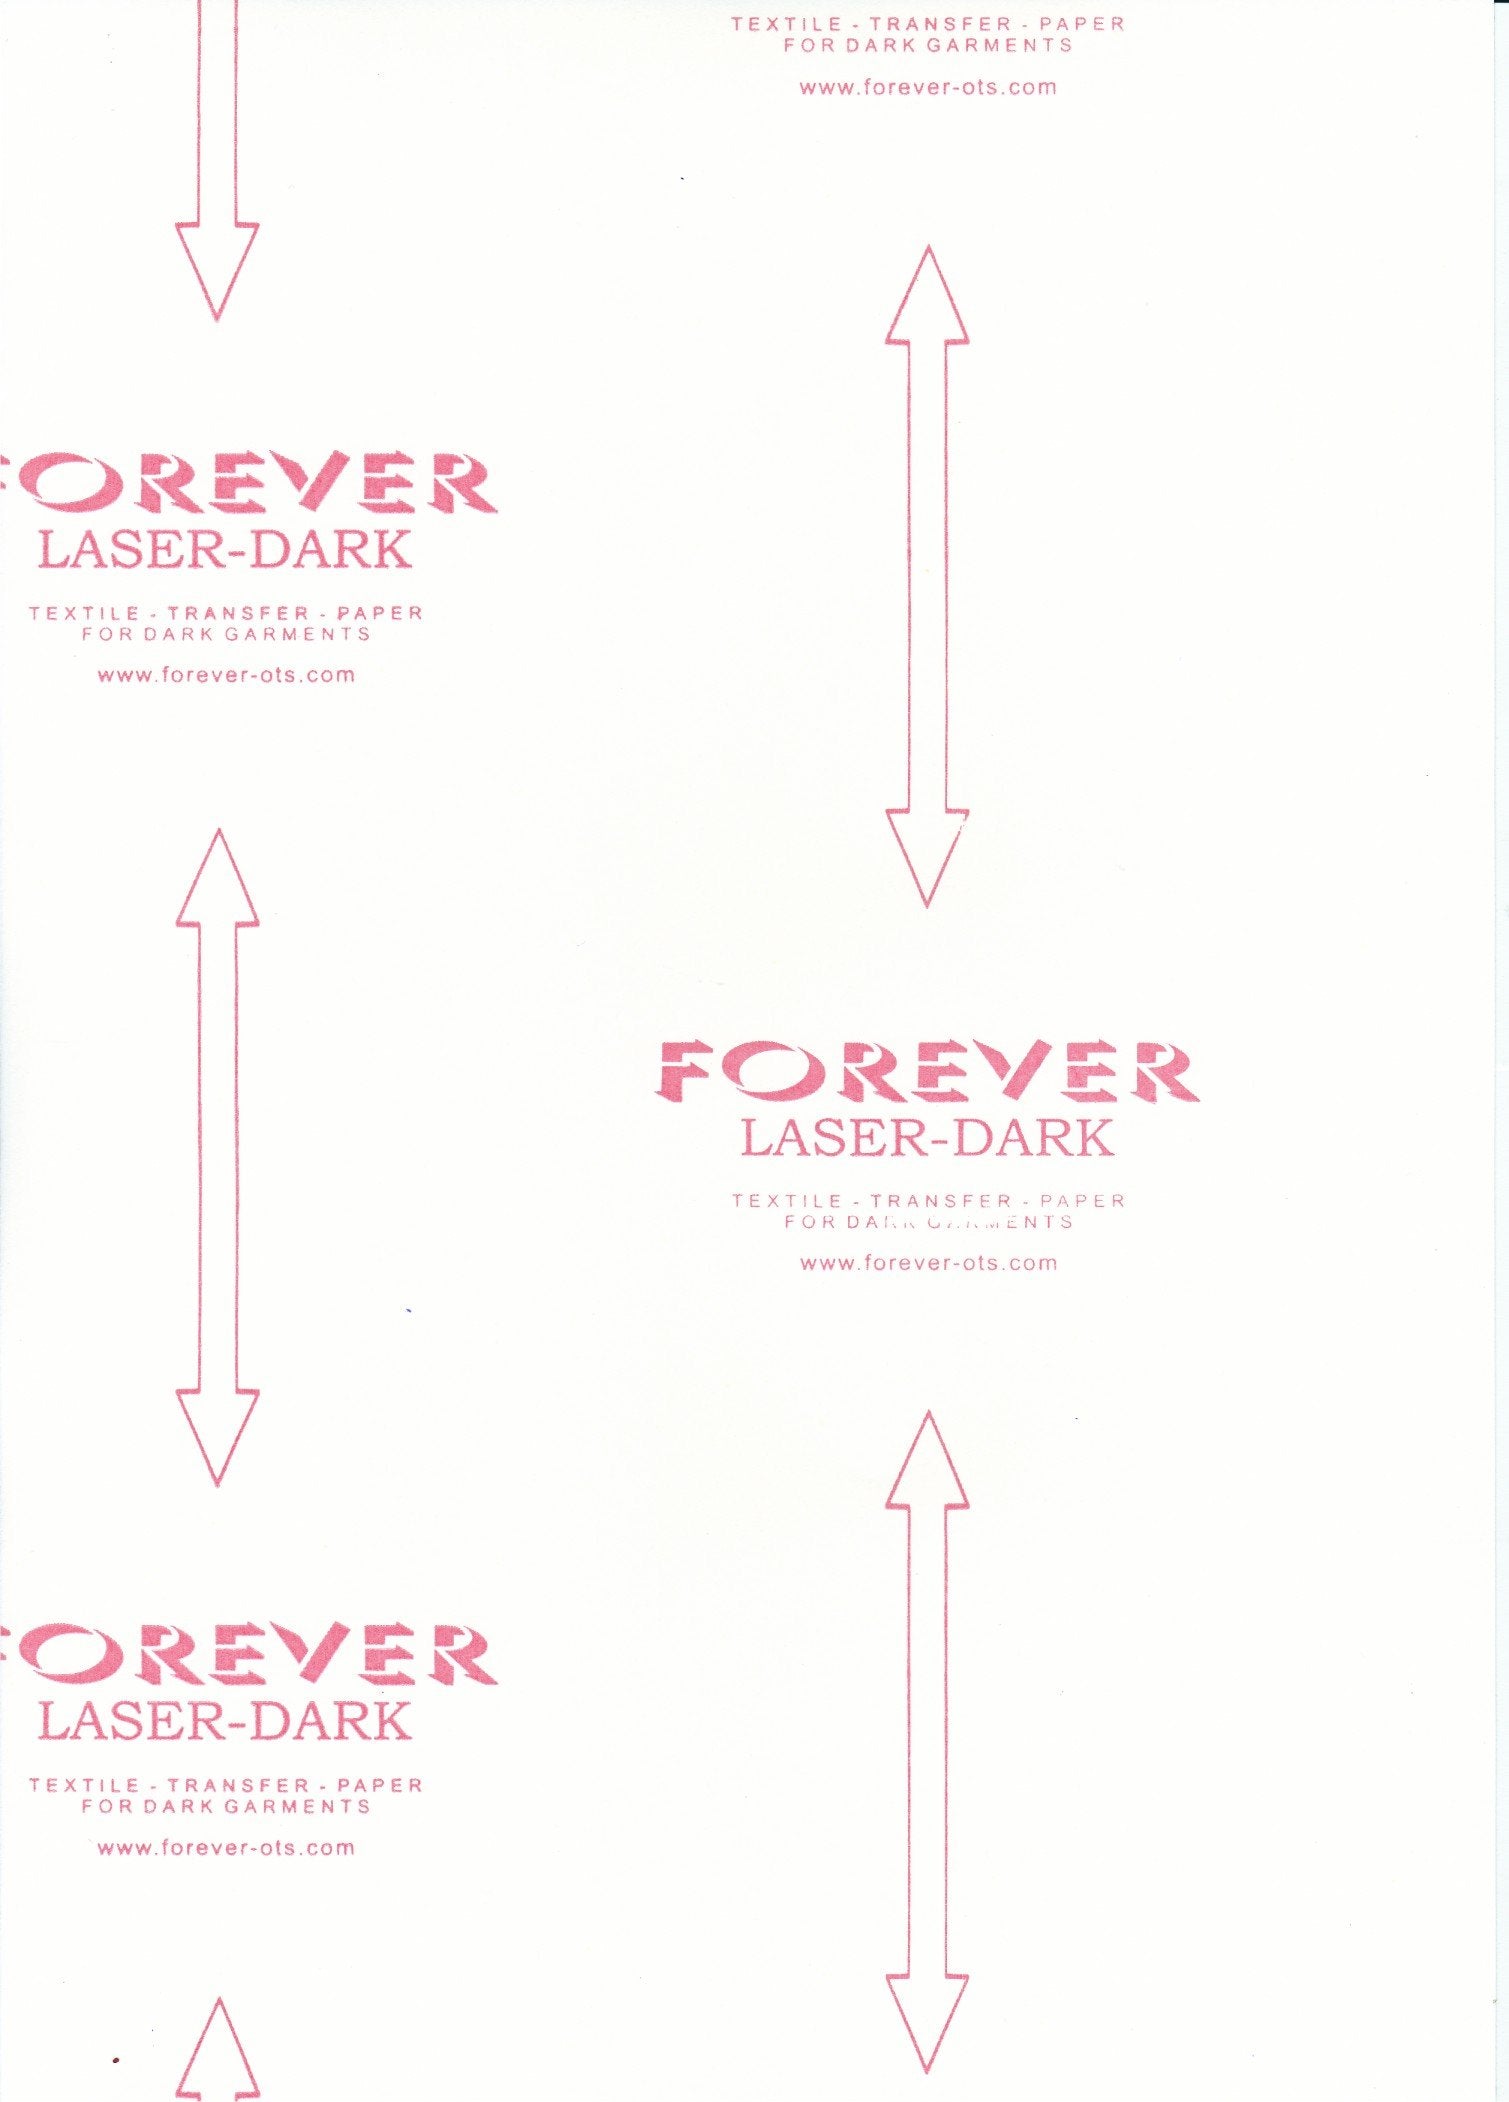 Forever Laser Dark